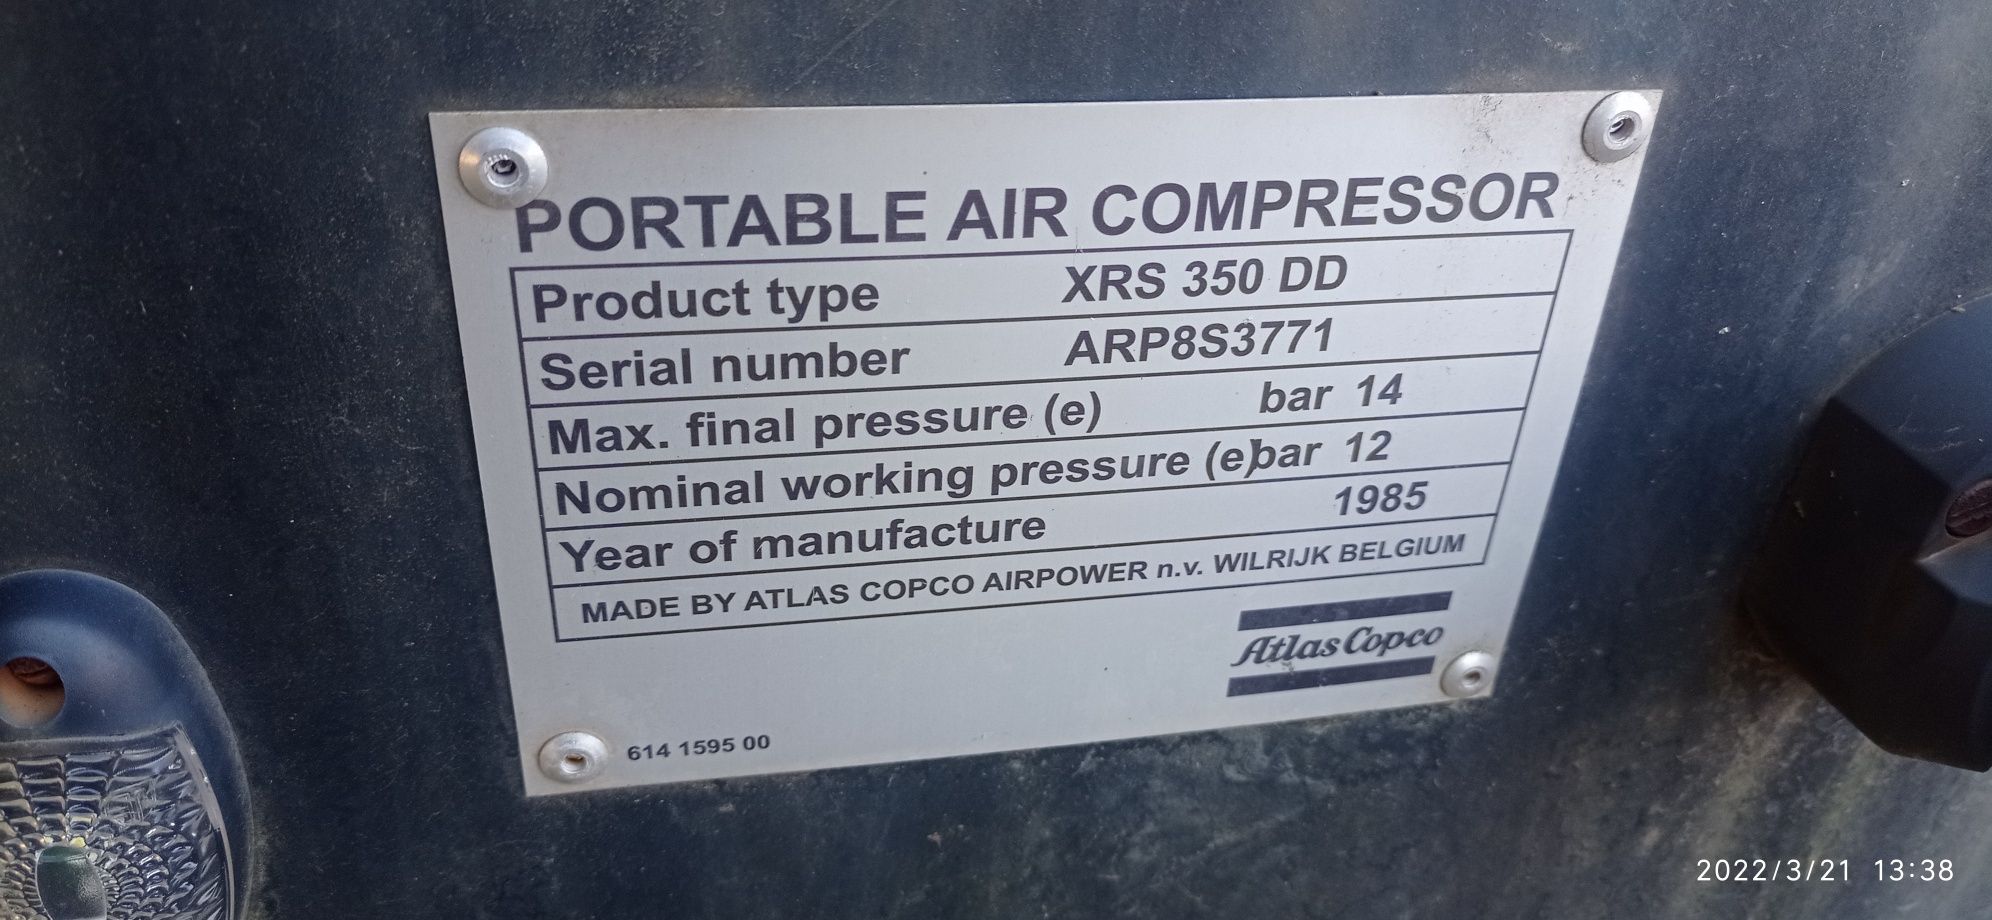 Kompresor atlas copco xrs350 dd